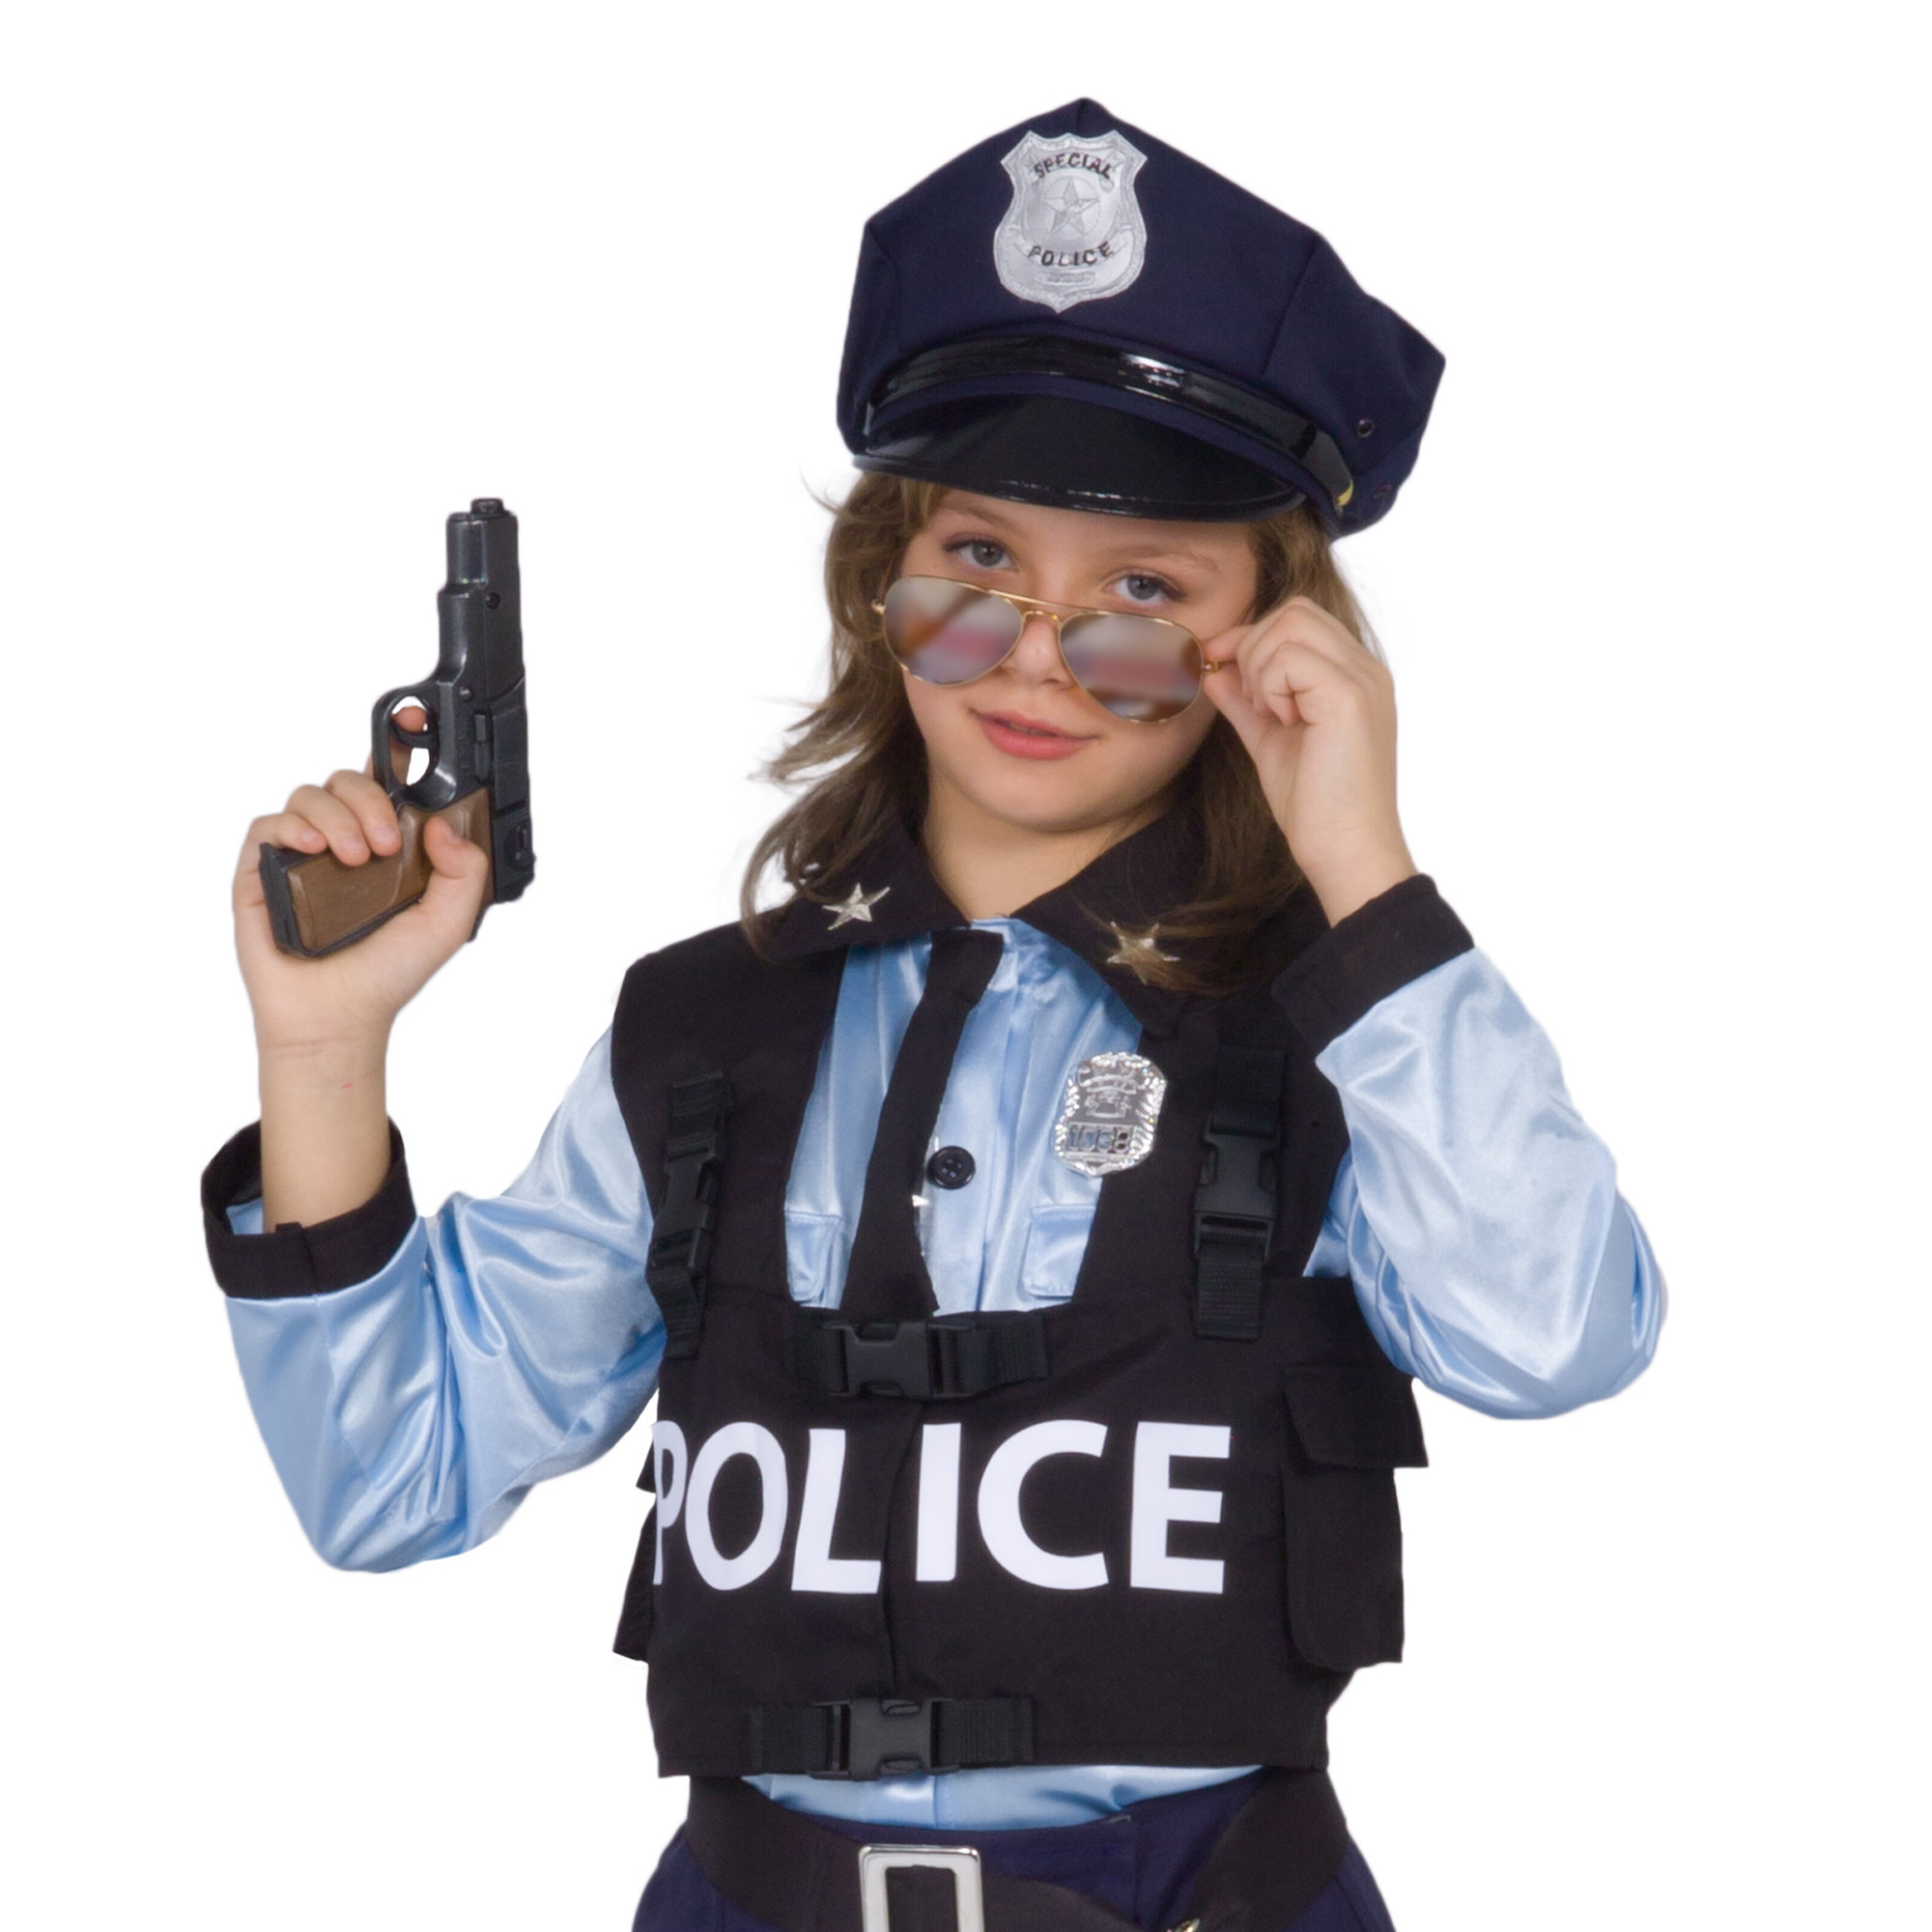 Ciao Travestimento Costume di Carnevale Poliziotta Special Police